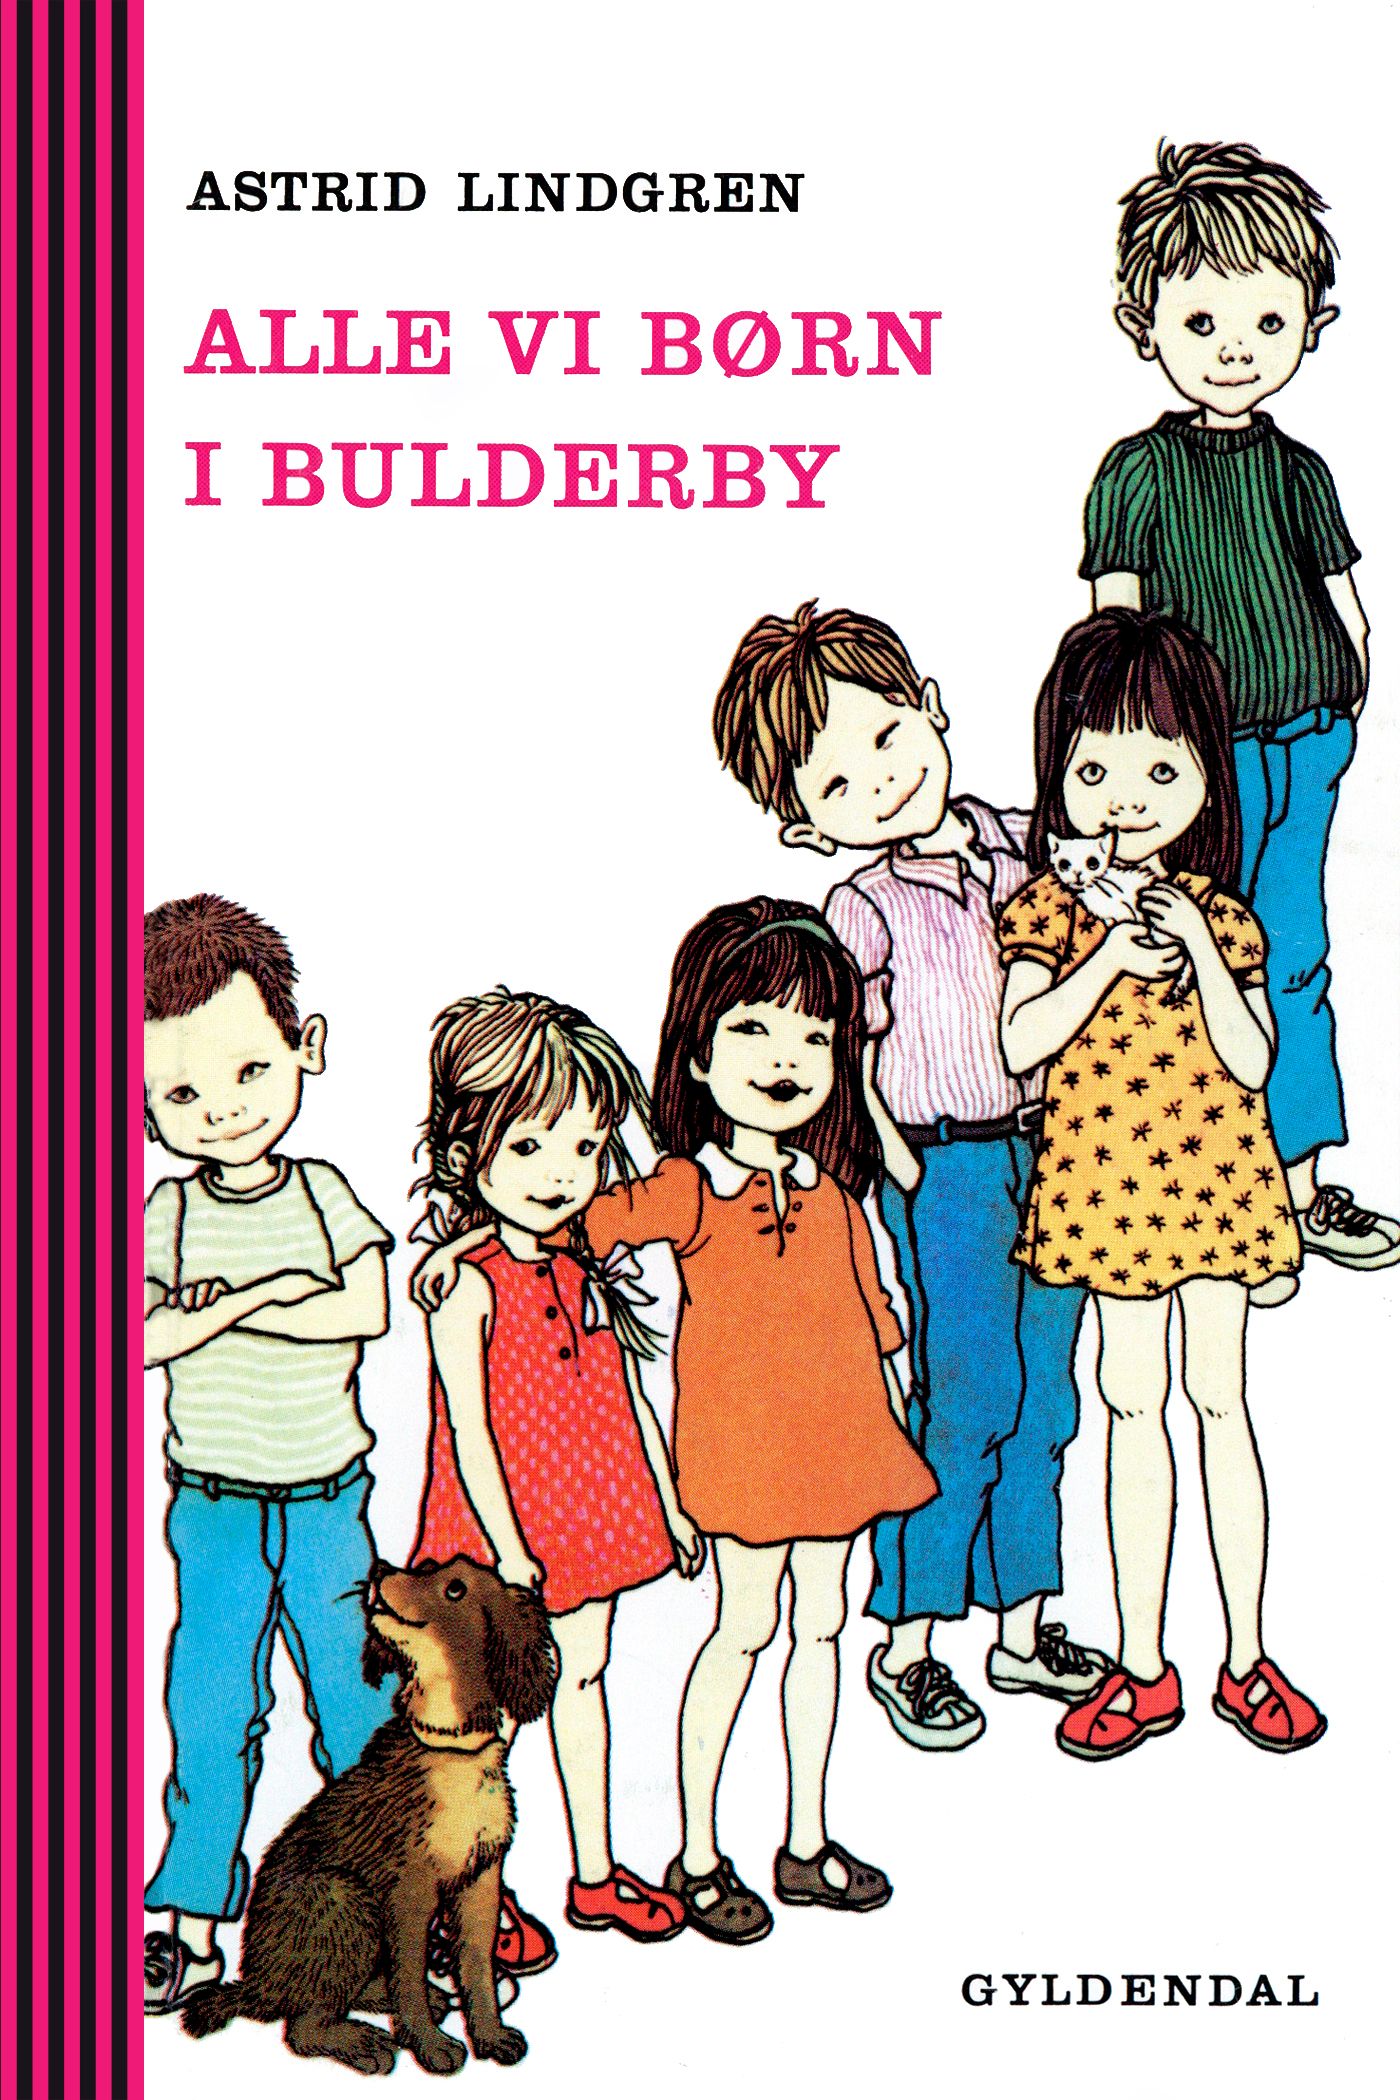 Alle vi børn i bulderby, eBook by Astrid Lindgren